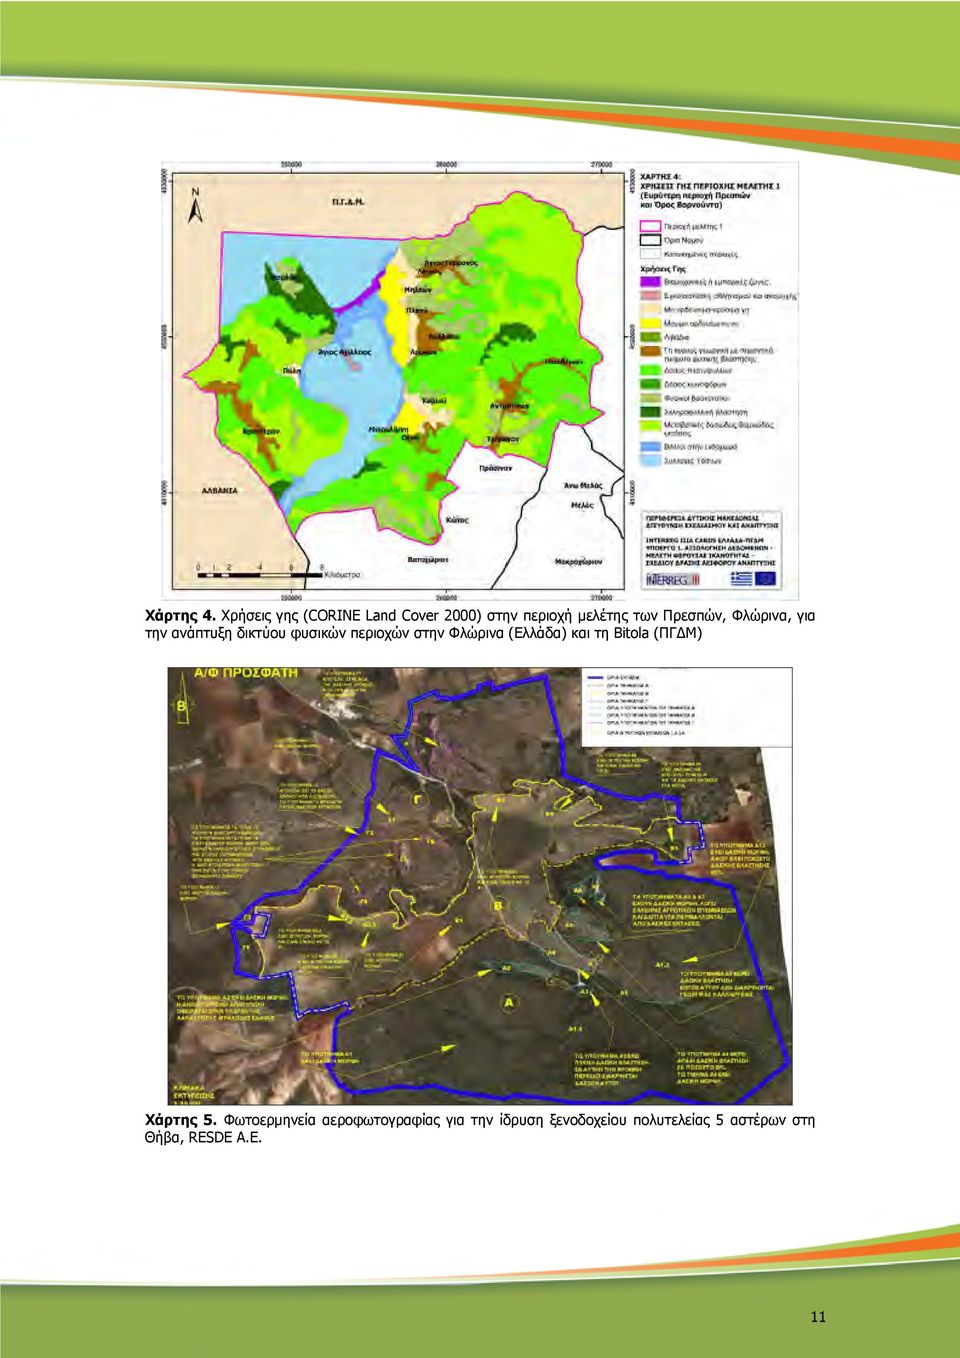 Φλώρινα, για την ανάπτυξη δικτύου φυσικών περιοχών στην Φλώρινα